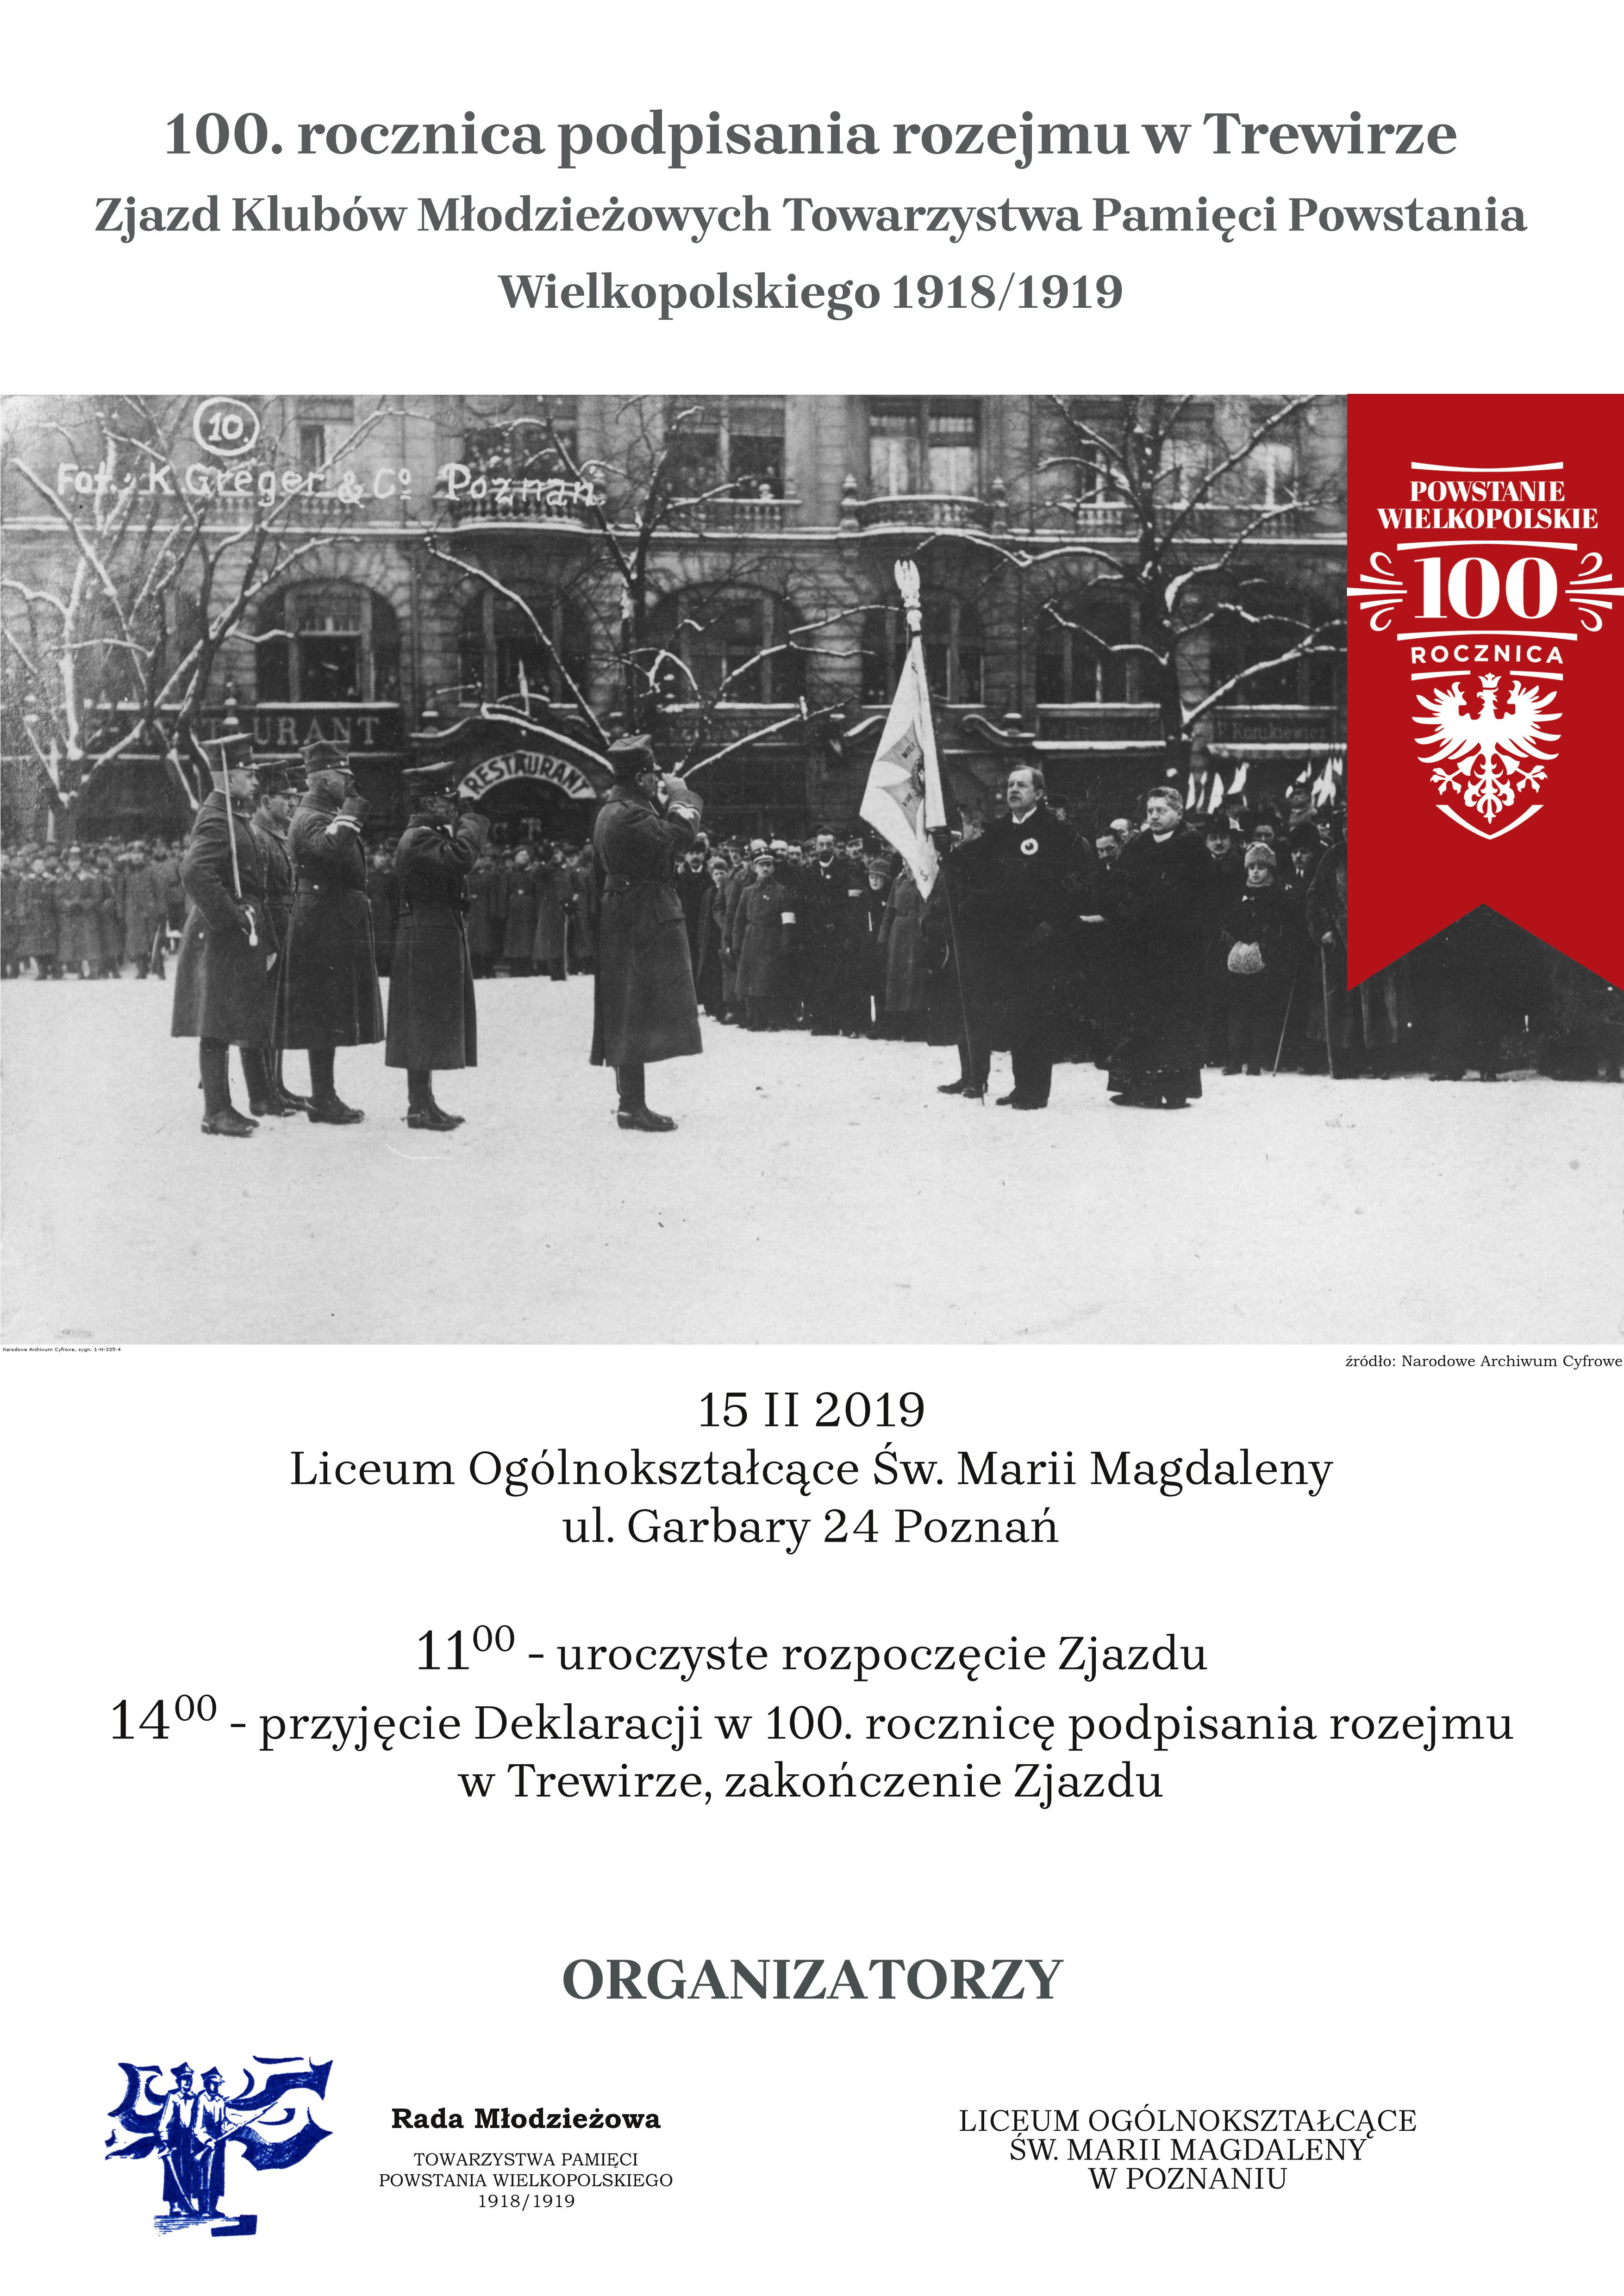 Zjazd klubów młodzieżowych Towarzystwa Pamięci Powstania Wielkopolskiego 1918/1919